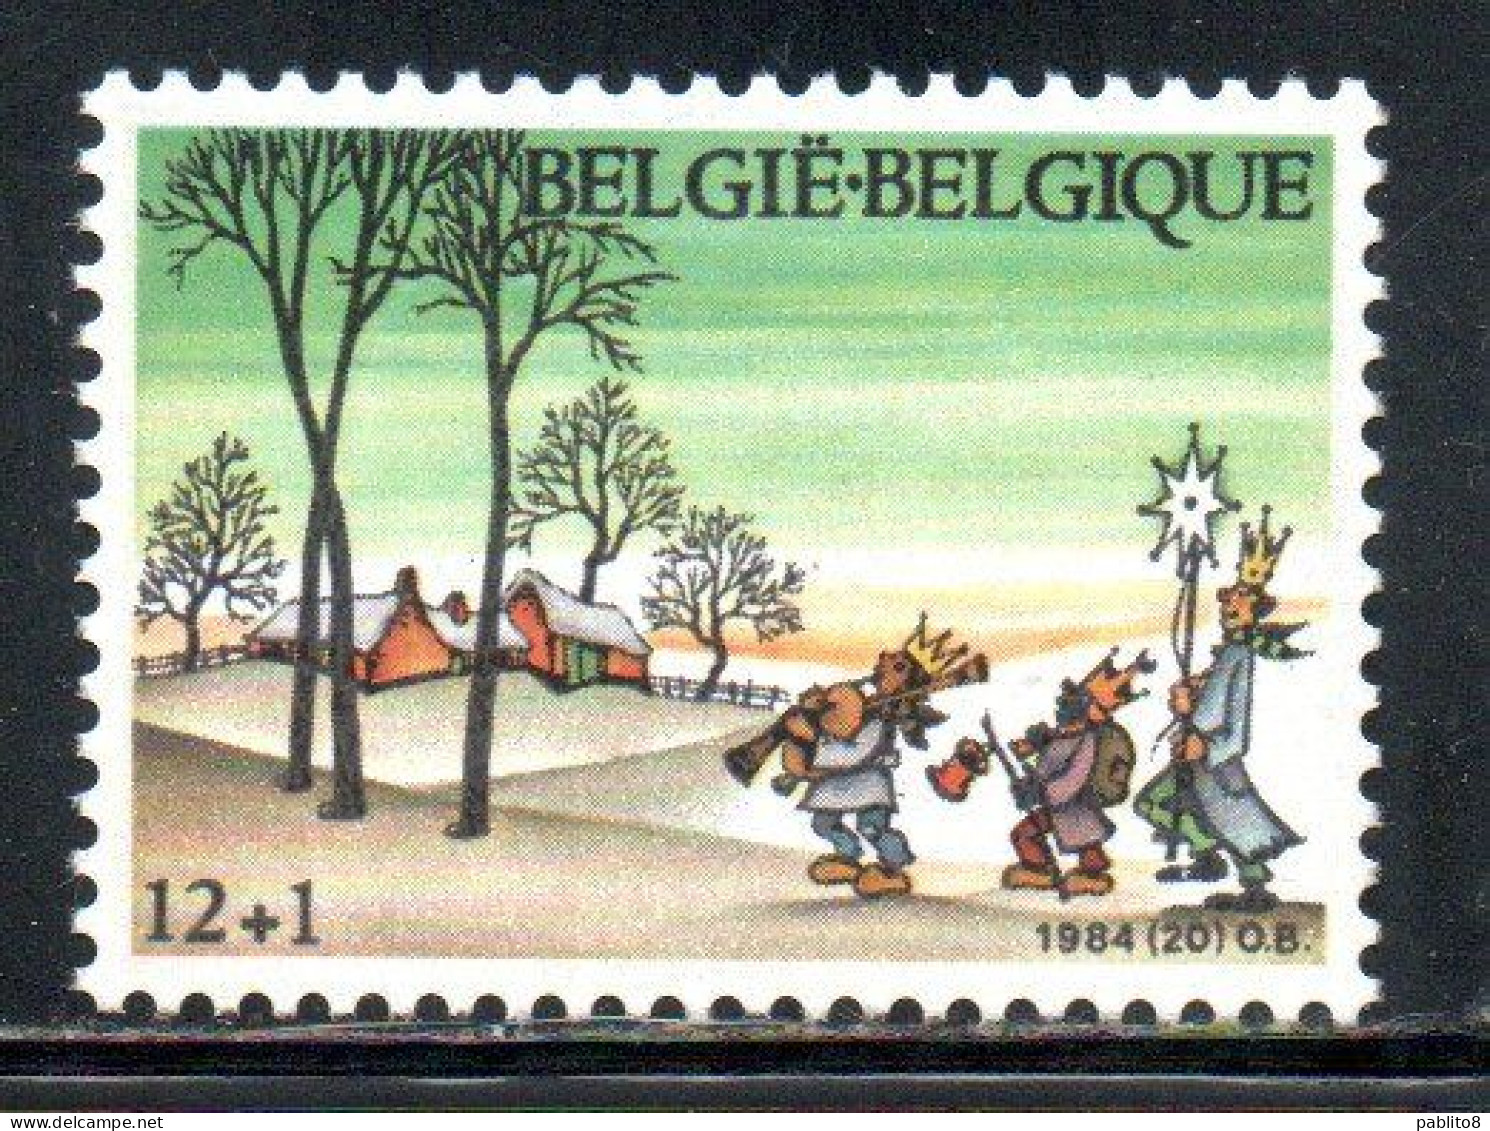 BELGIQUE BELGIE BELGIO BELGIUM 1984 CHRISTMAS NOEL NATALE WEIHNACHTEN NAVIDAD 12 + 1fr MNH - Nuovi